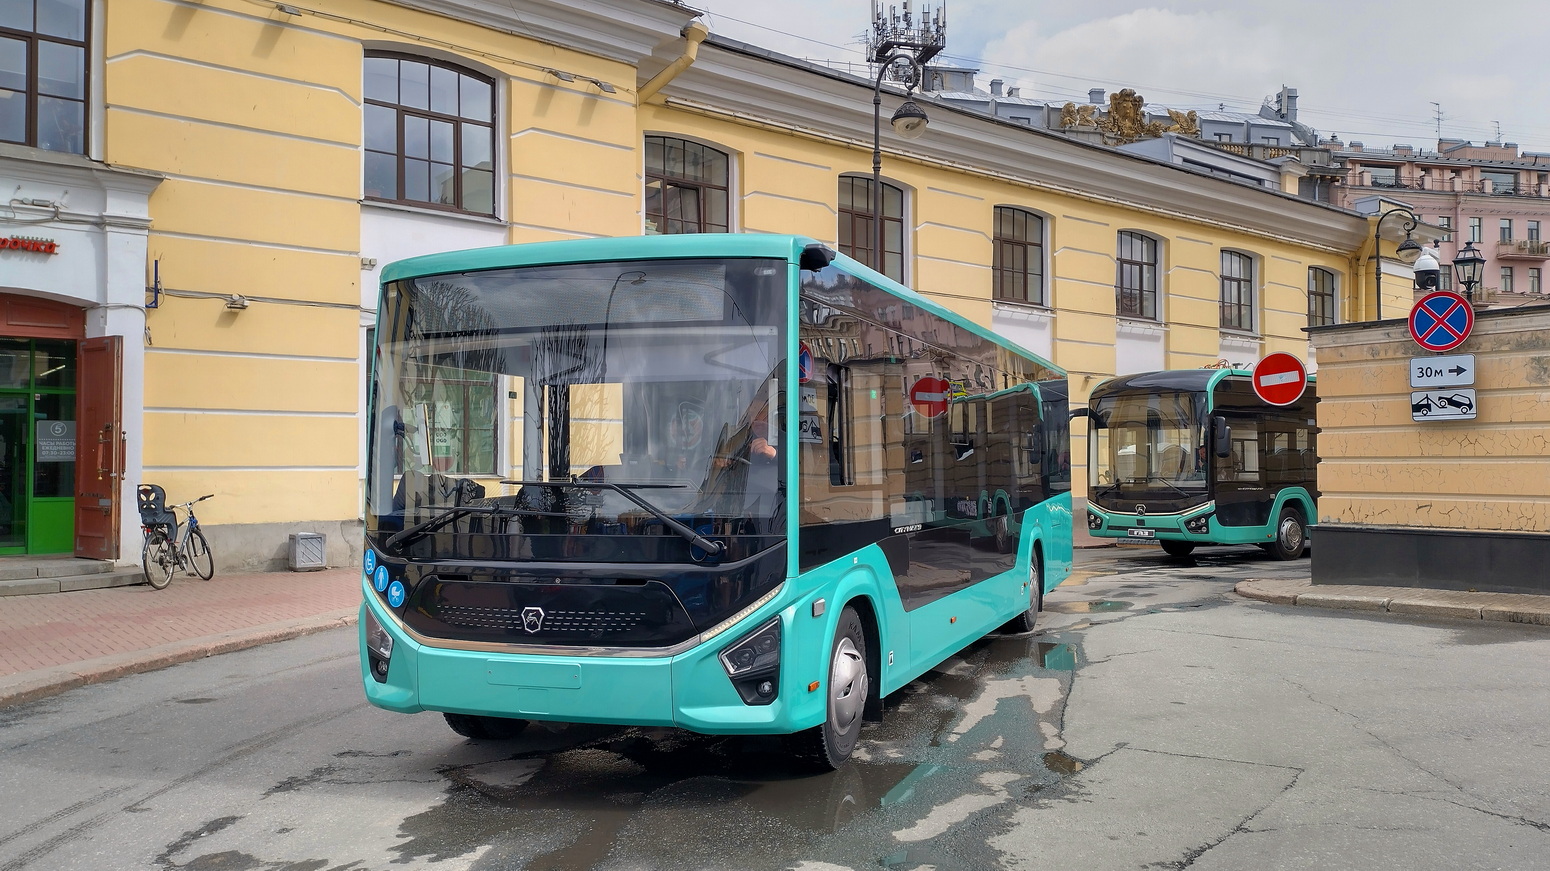 Nizhegorodskaya region, PAZ-422320-04 "Citymax 9" Nr. Citymax 9; Sankt Petersburg — III International Transport Festival "SPbTransportFest-2022"